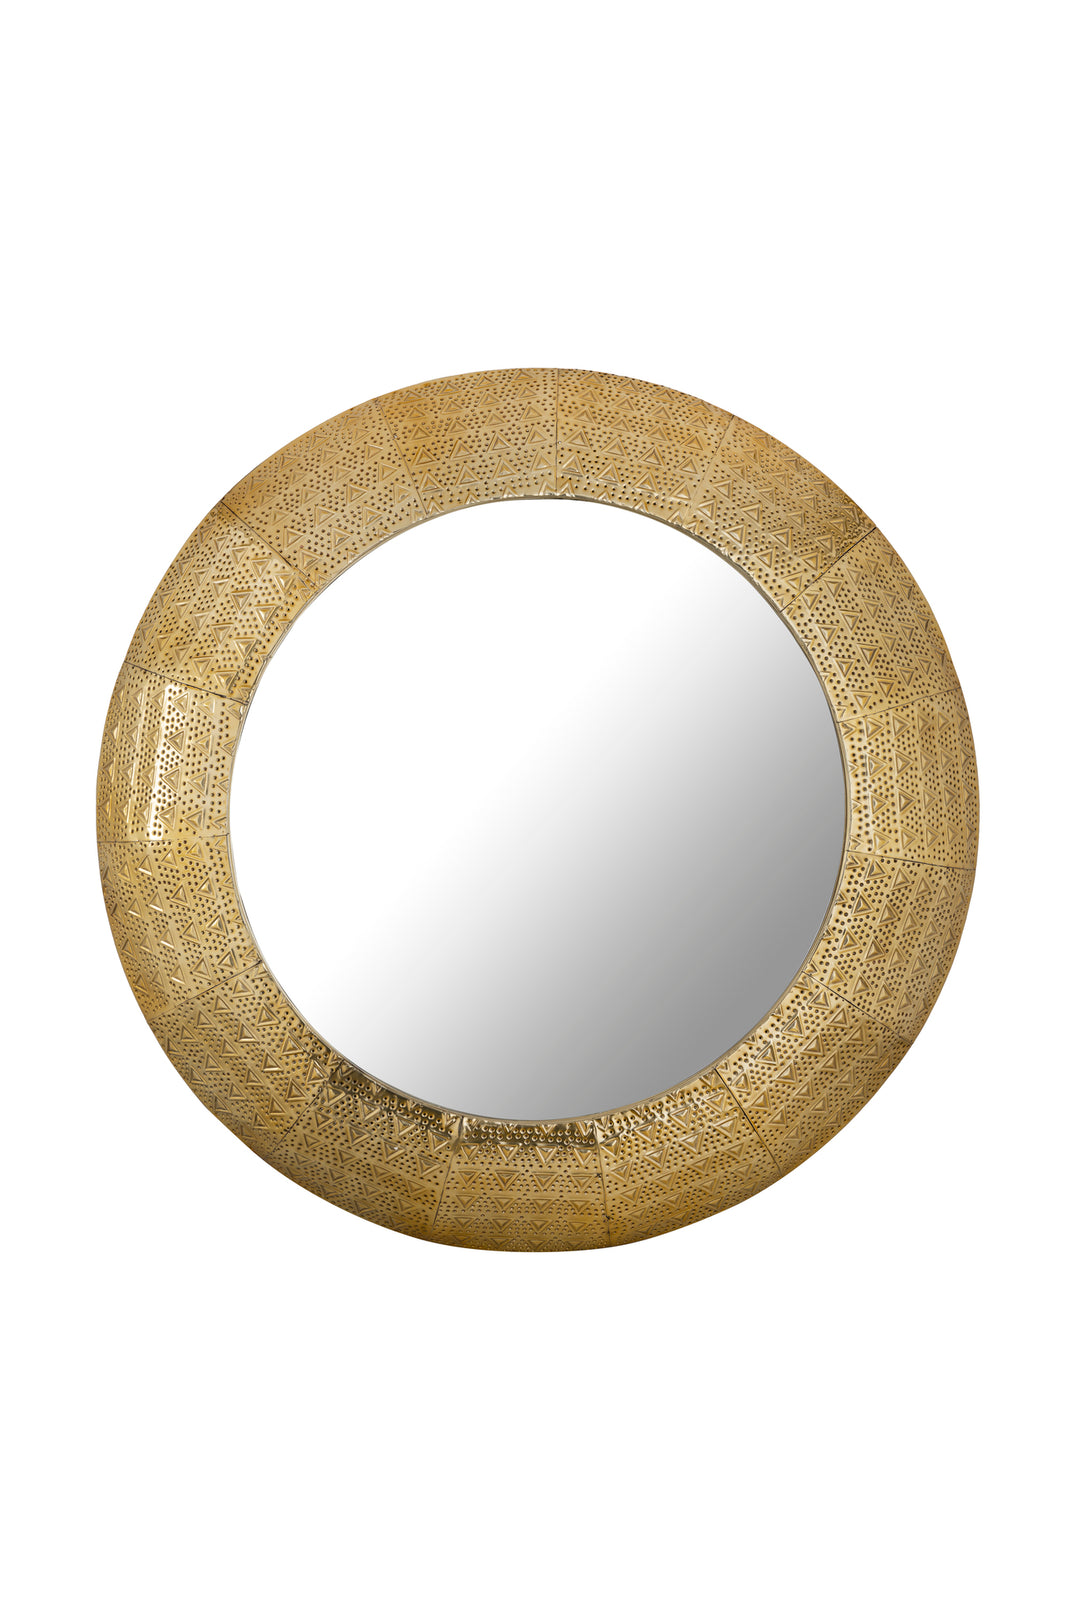 Karigar Antique Round Wall Mirror